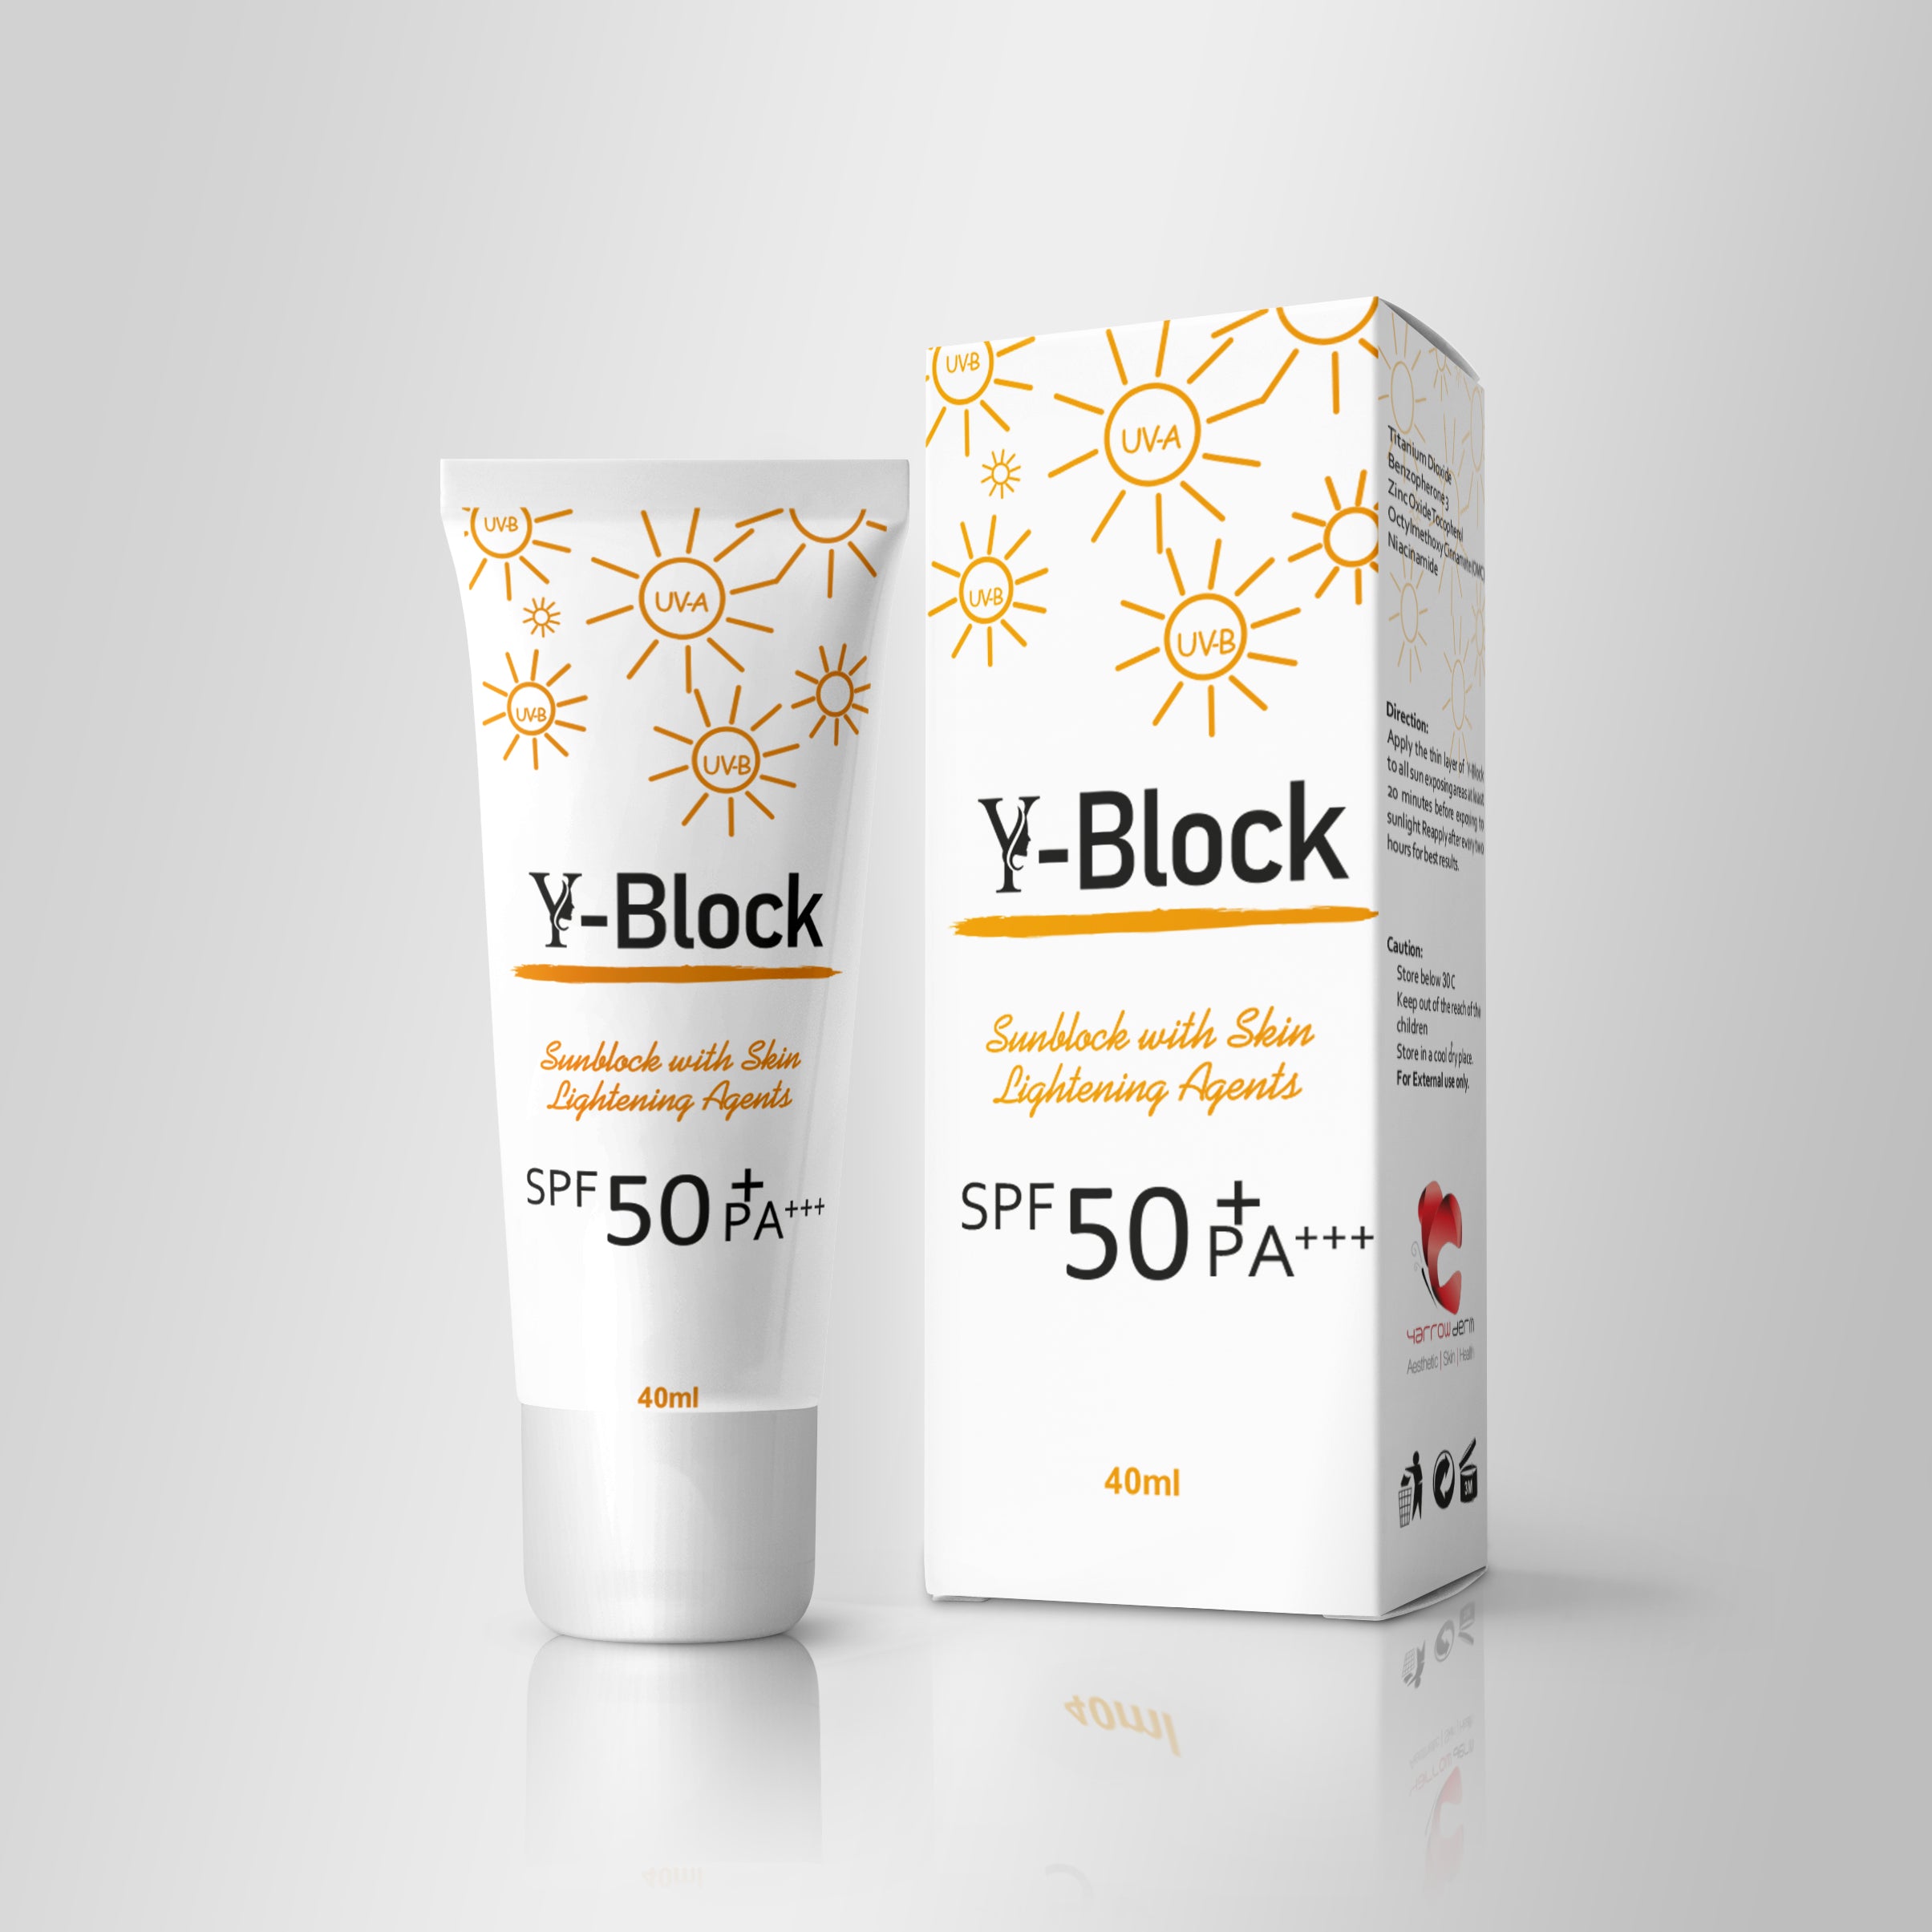 Y-Block Sunblock